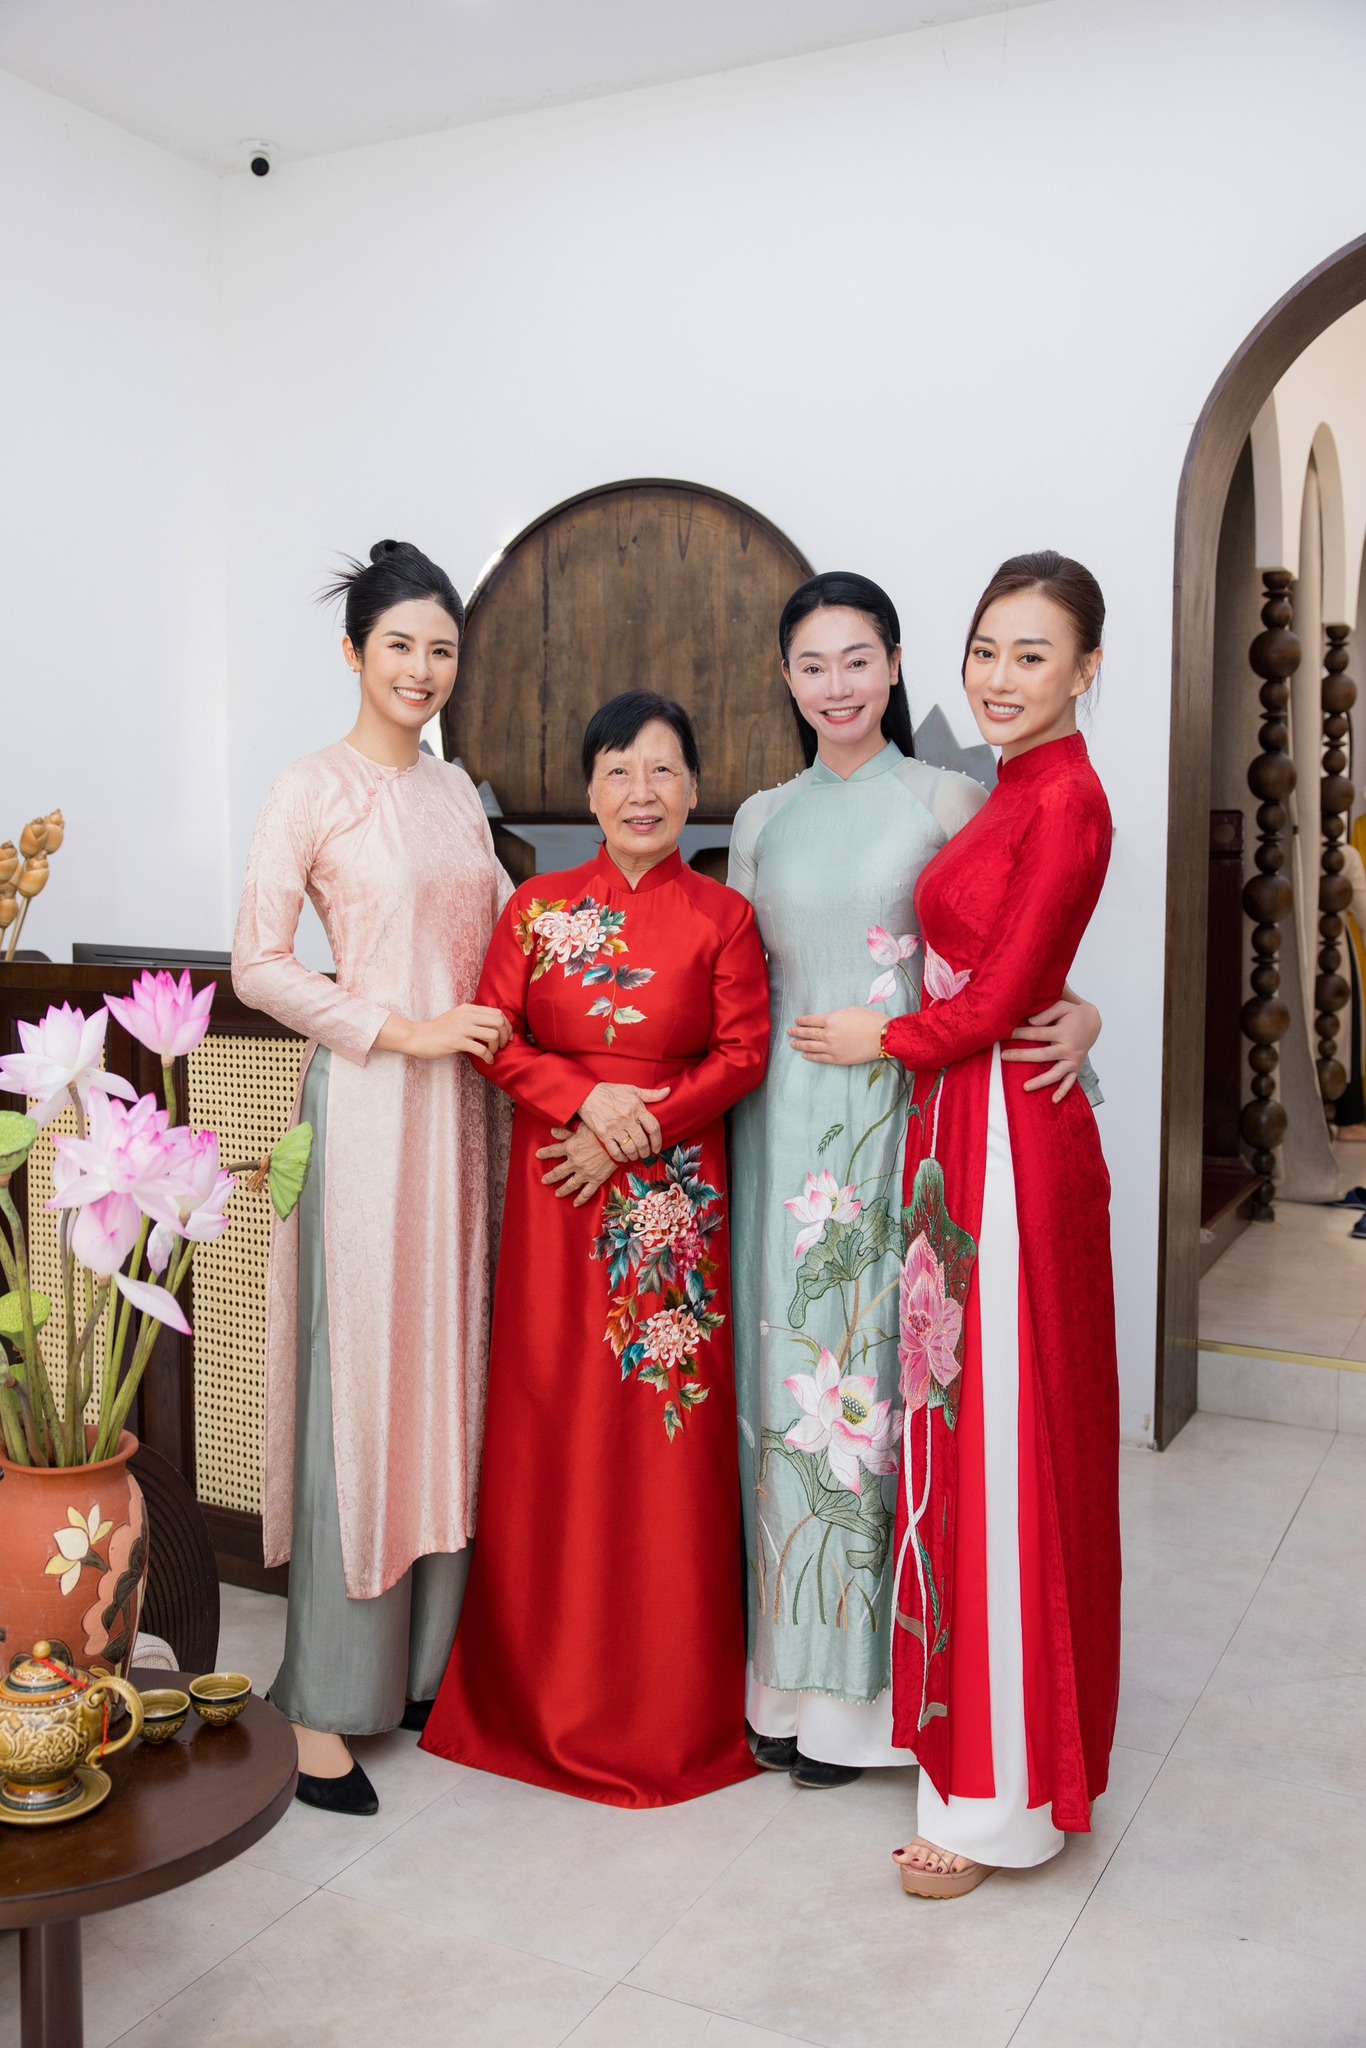 Không phải mẹ đẻ, diễn viên Phương Oanh đi thử áo dài cưới với mẹ Shark Bình và người phụ nữ này - ảnh 1